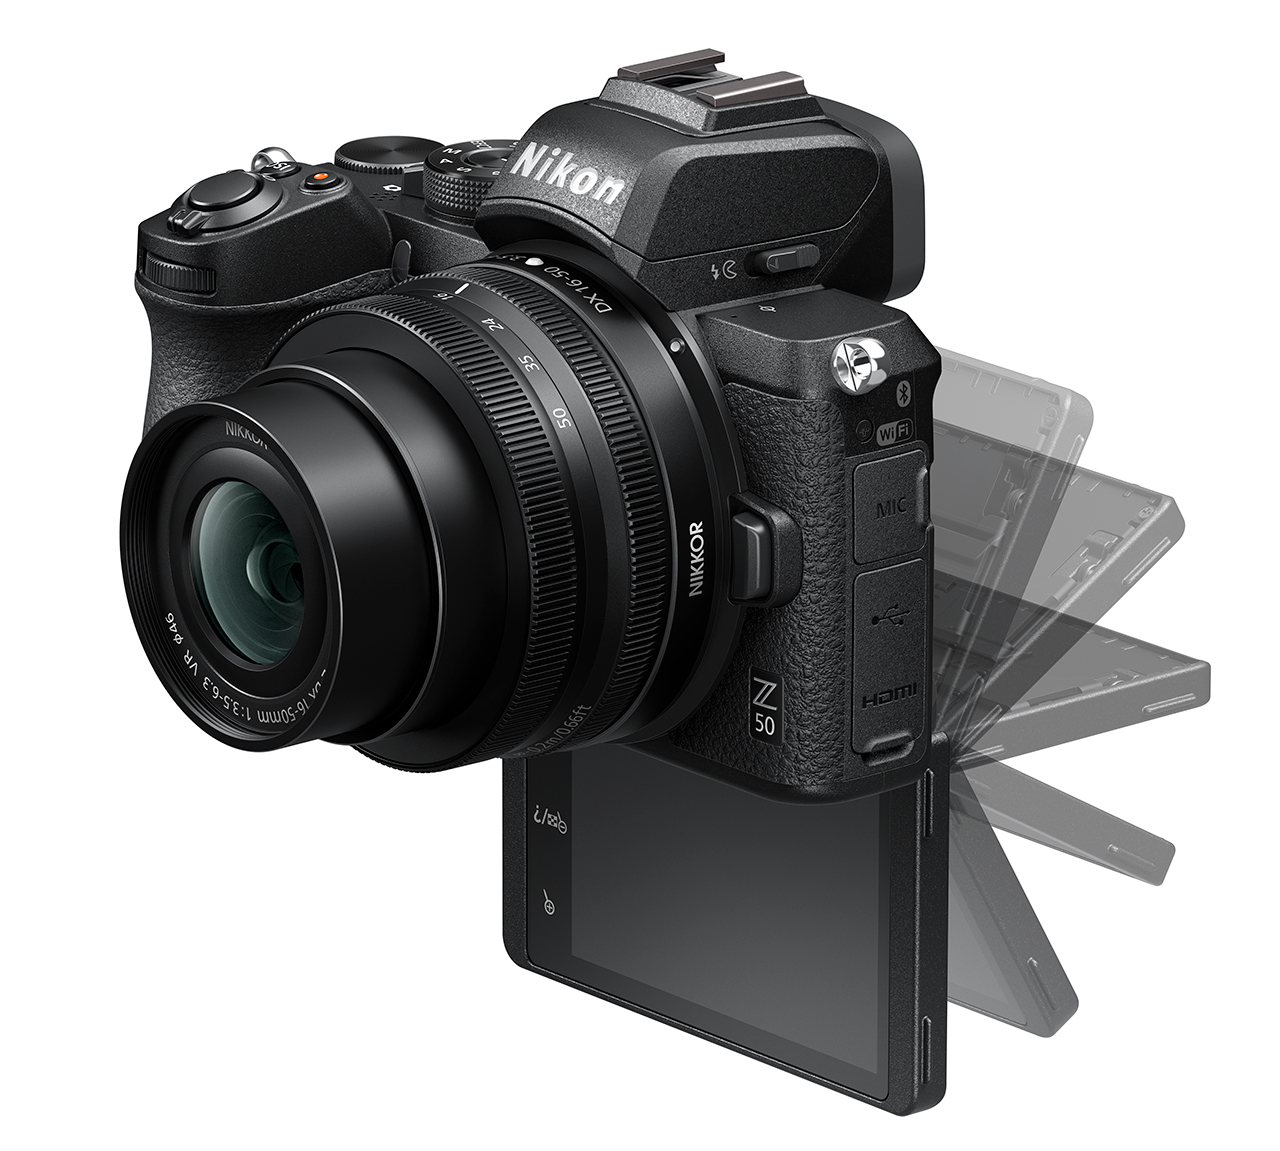 Nikon Z50 Review: updated for Vlogging - Camera Jabber